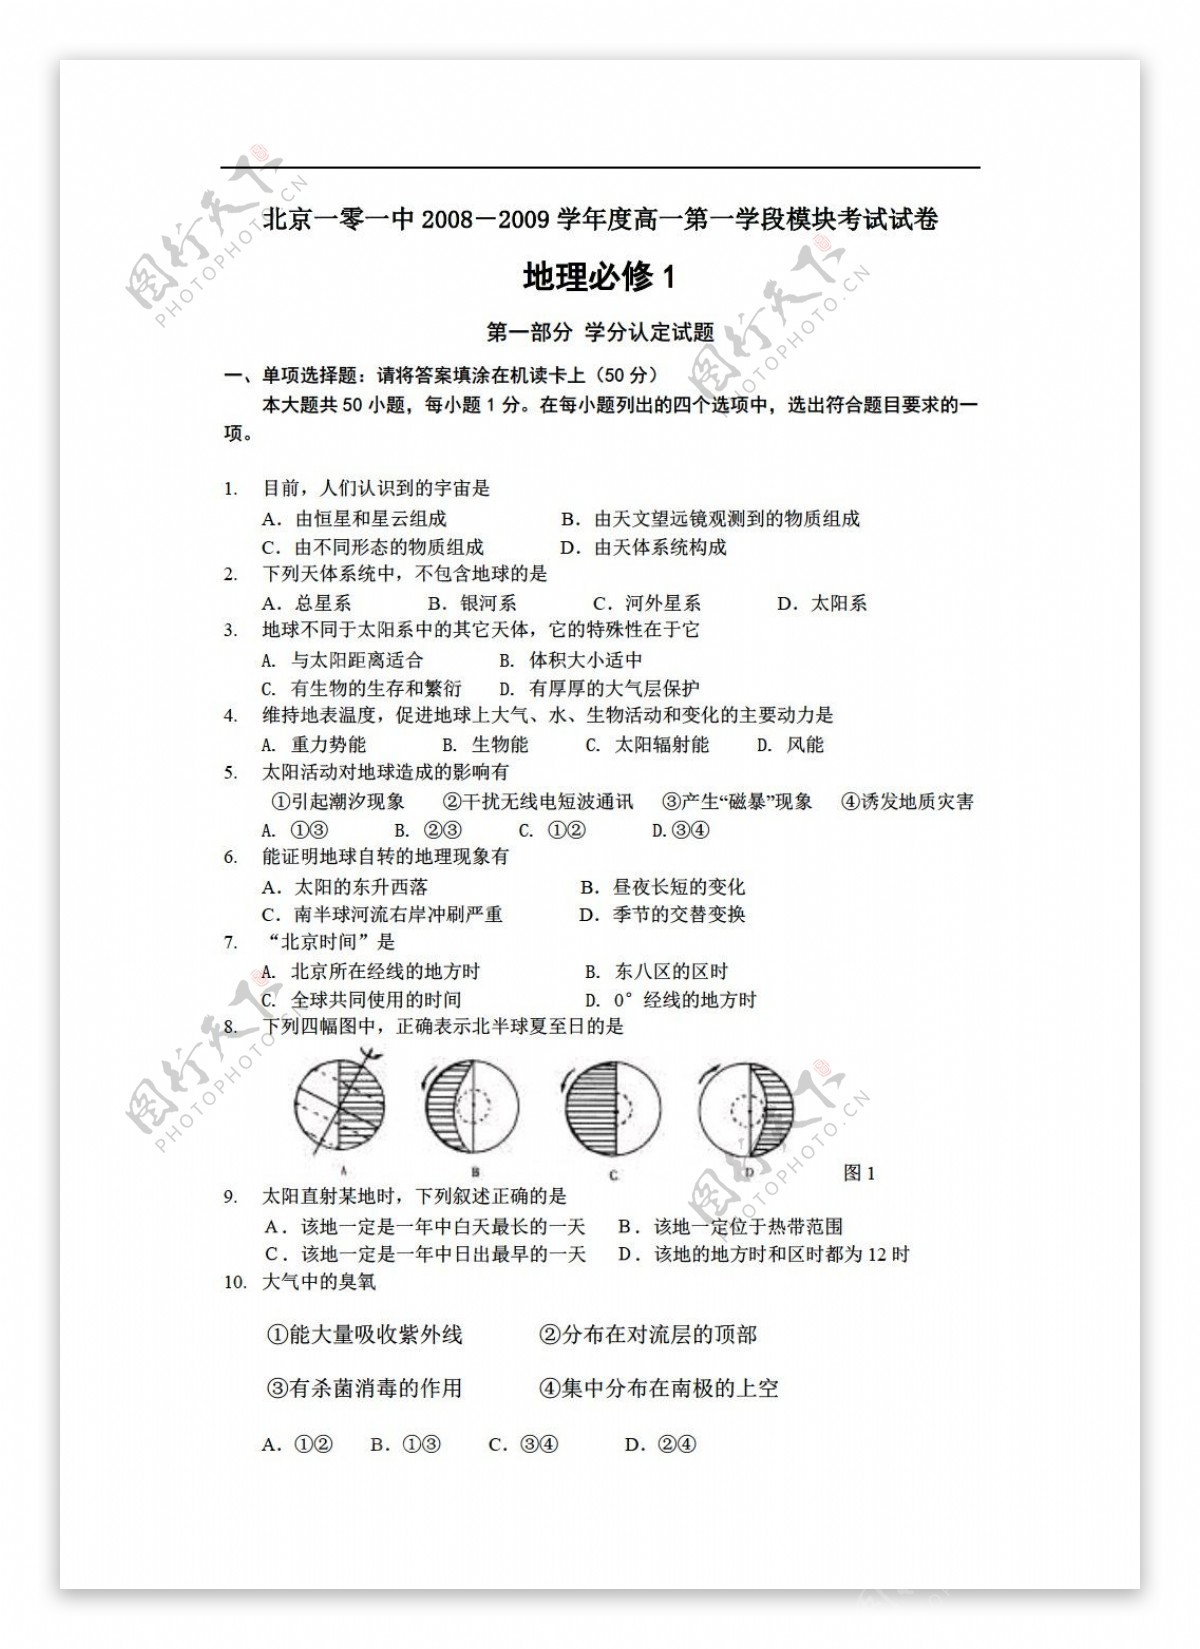 地理人教版北京101中学学年高一第二学段模块考试